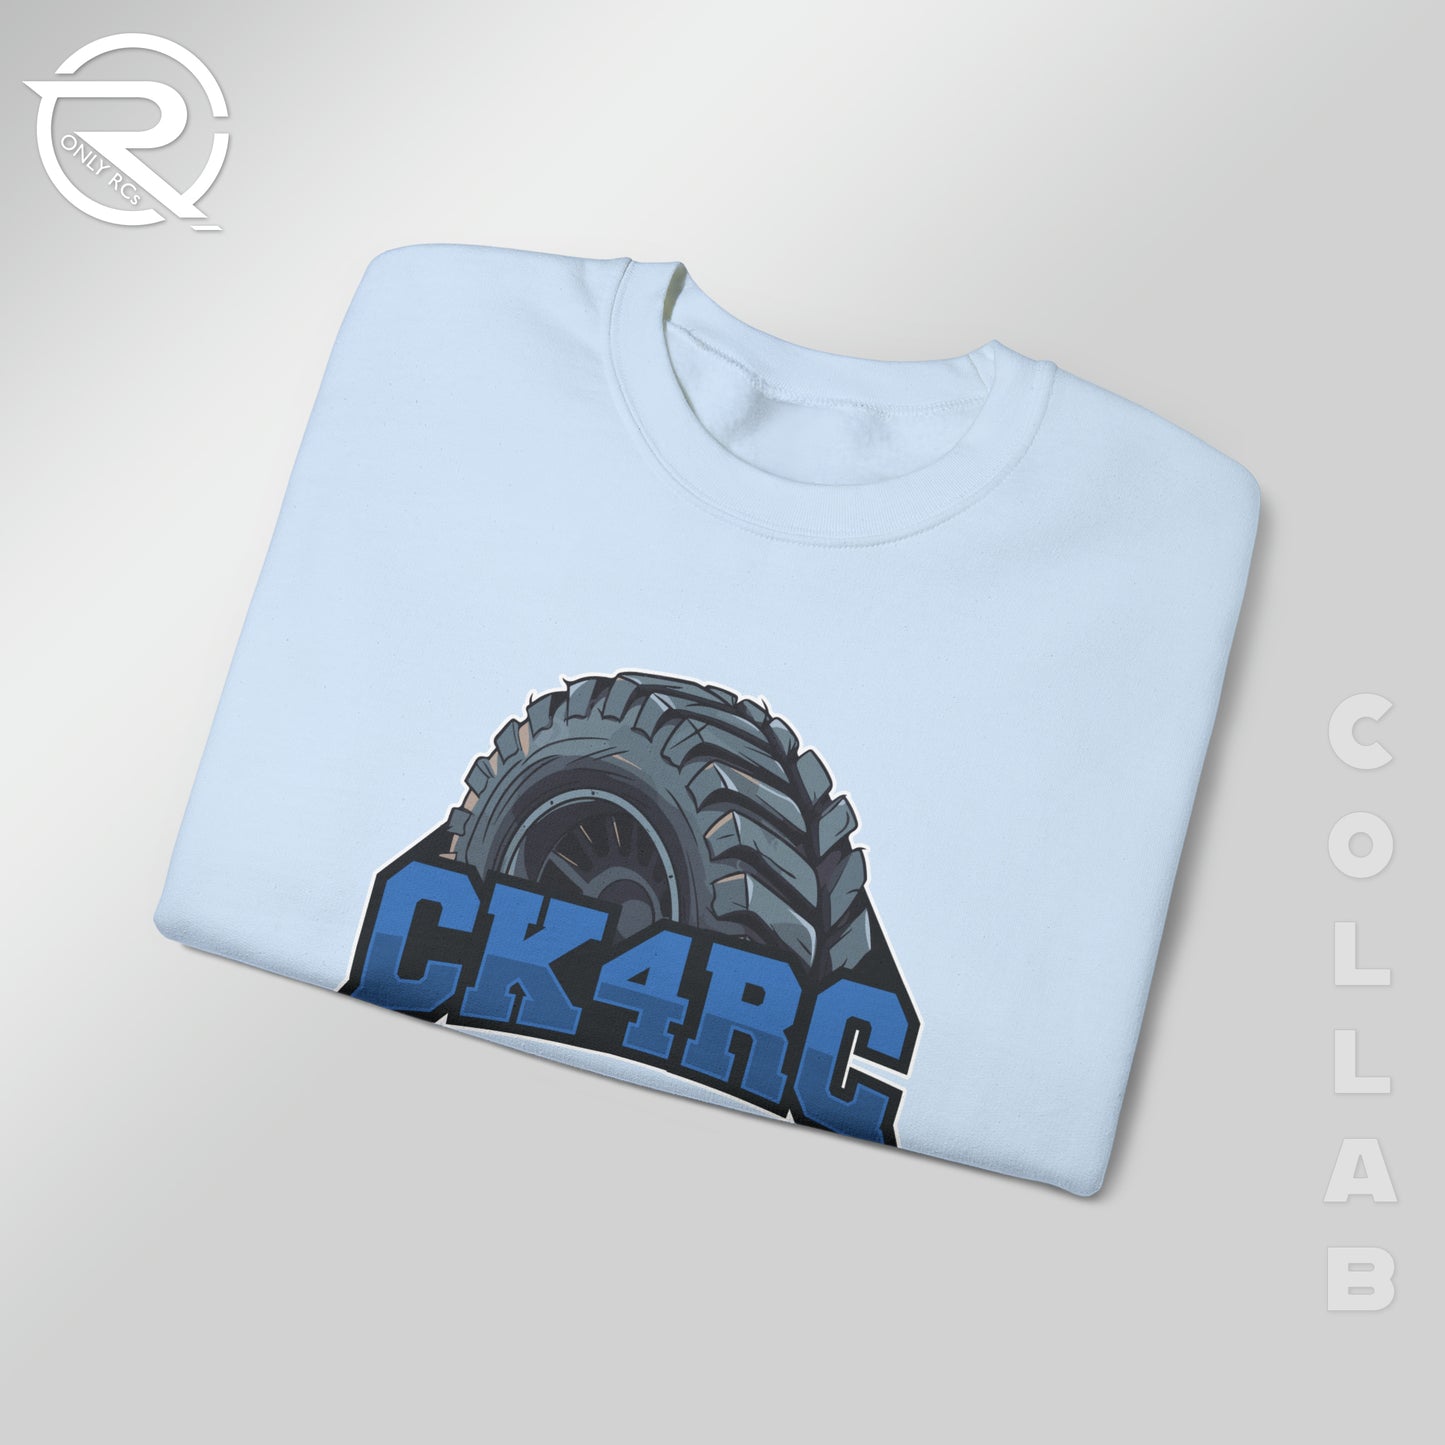 OnlyRCs - CK4RC Logo Unisex Heavy Blend™ Crewneck Sweatshirt - Collaboration